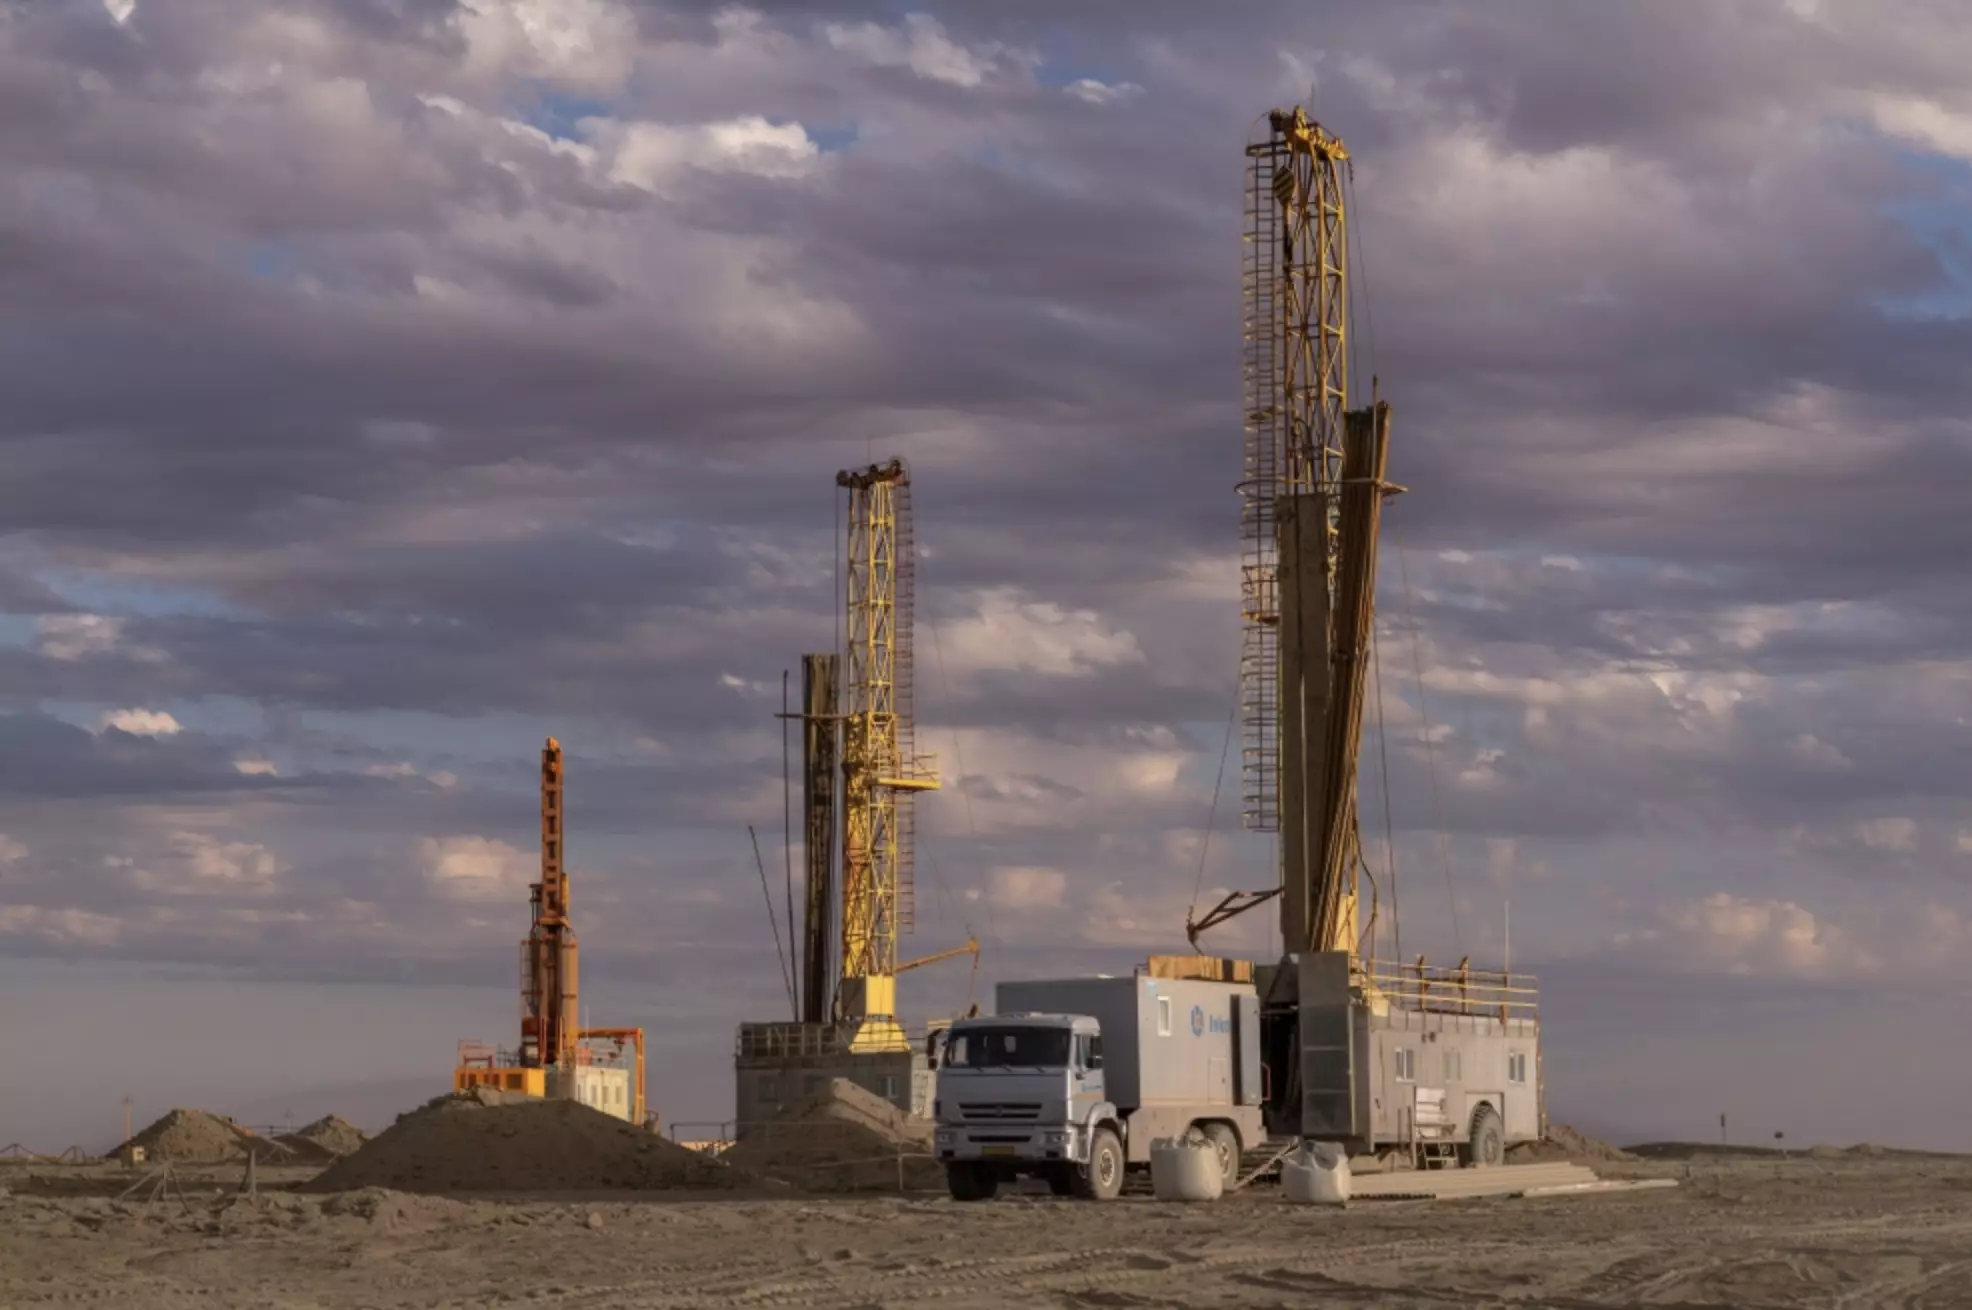 В 701 тонну планируется добыча урана на новом участке месторождения Инкай - «Казатомпром»